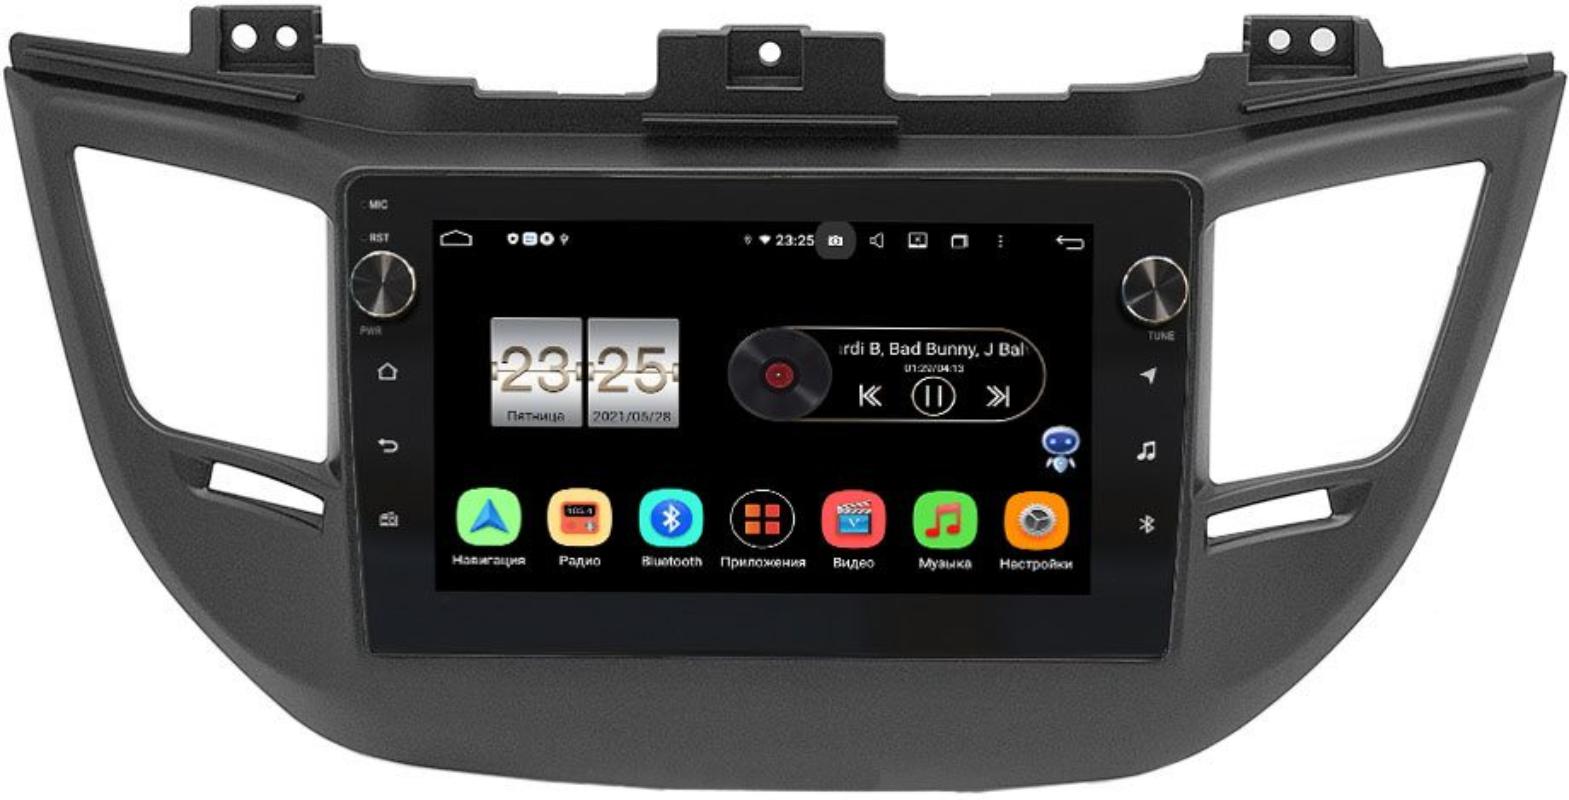 Штатная магнитола LeTrun BPX609-064 для Hyundai Tucson III 2015-2018 на Android 10 (4/64, DSP, IPS, с голосовым ассистентом, с крутилками) для авто без камеры (+ Камера заднего вида в подарок!)